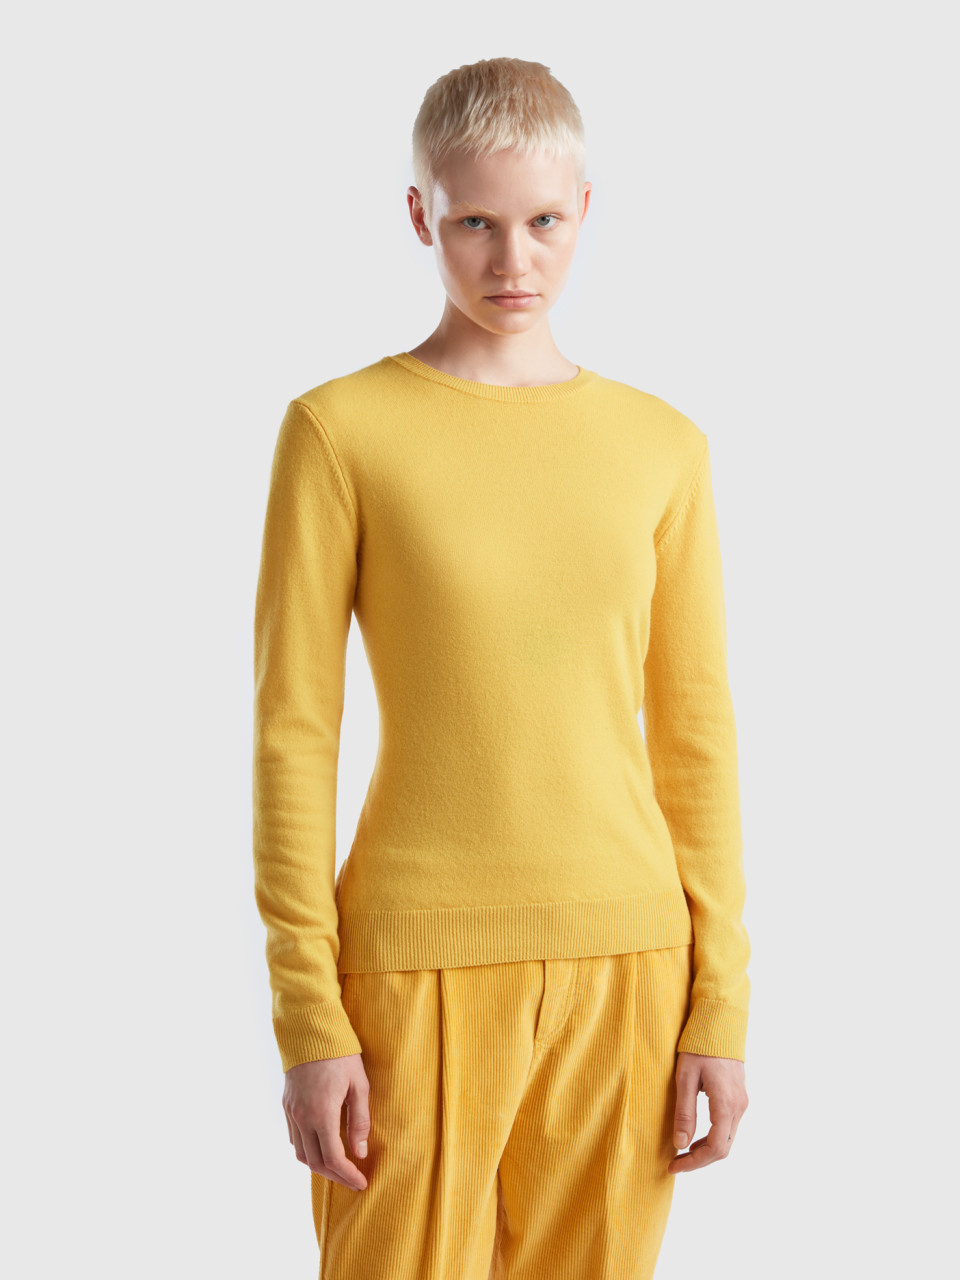 Benetton, Yellow Crew Neck Sweater In Merino Wool, Yellow, Women